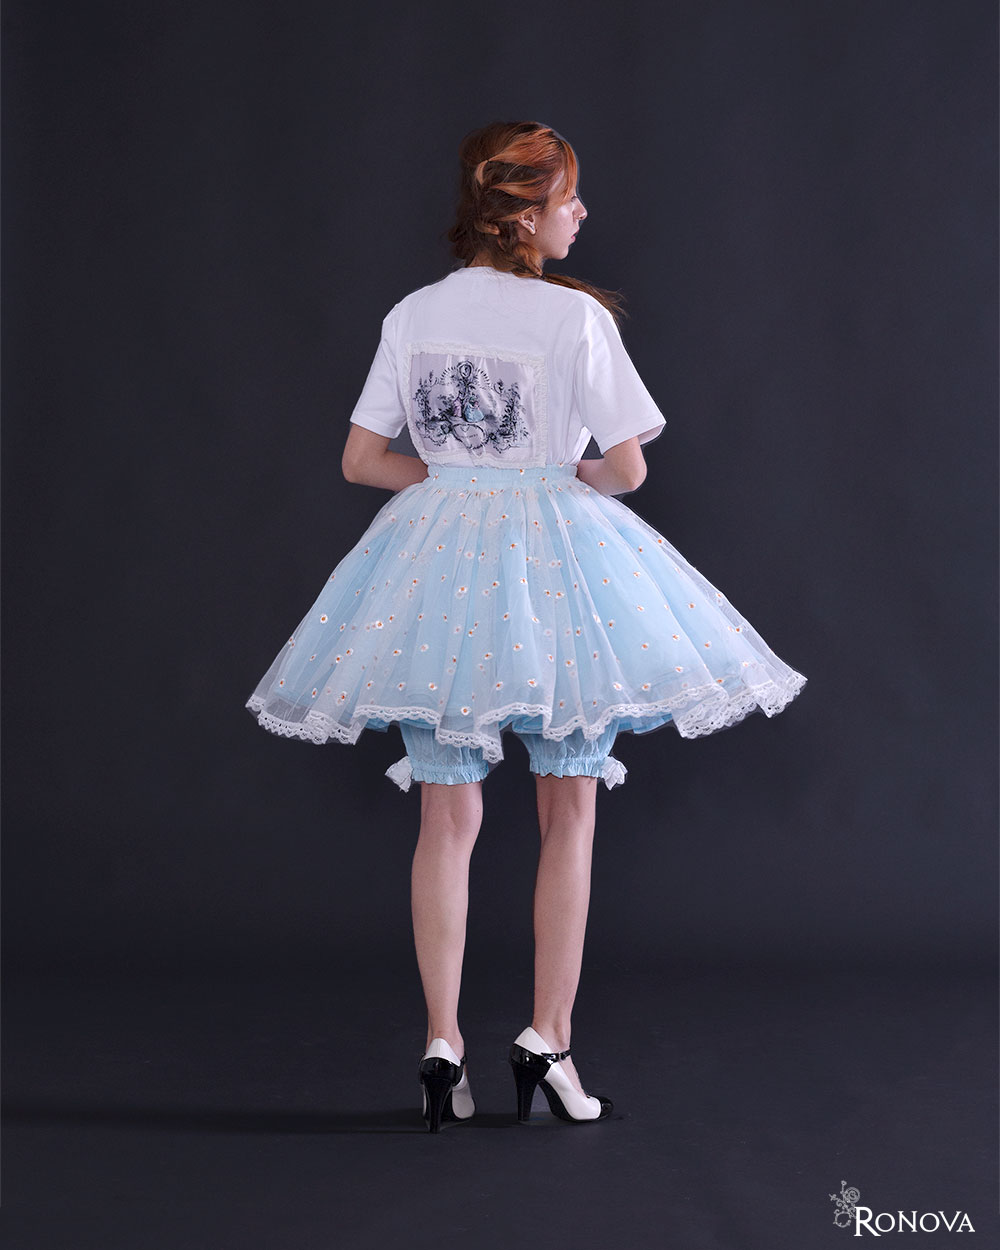 Ronova Petticoat Skirt with Daisy on Mint Blue